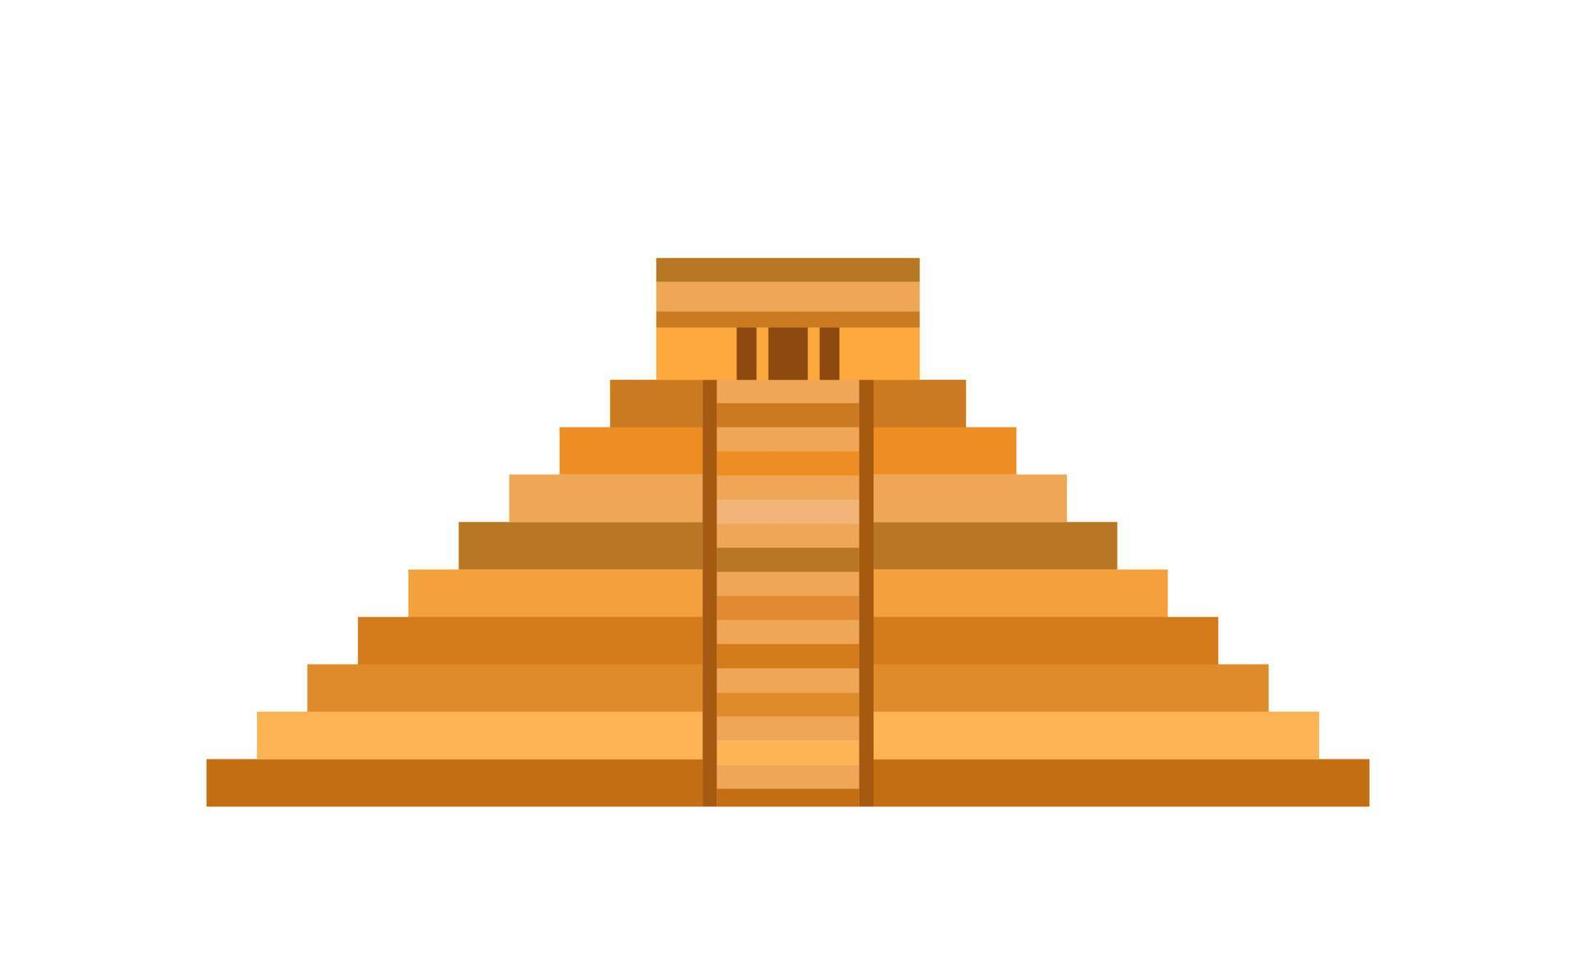 icona della piramide maya, tempio di kukulcan, piramide di el castillo in design piatto di chichen itza, antica architettura sacra maya nello yucatan, messico. vettore isolato su sfondo bianco